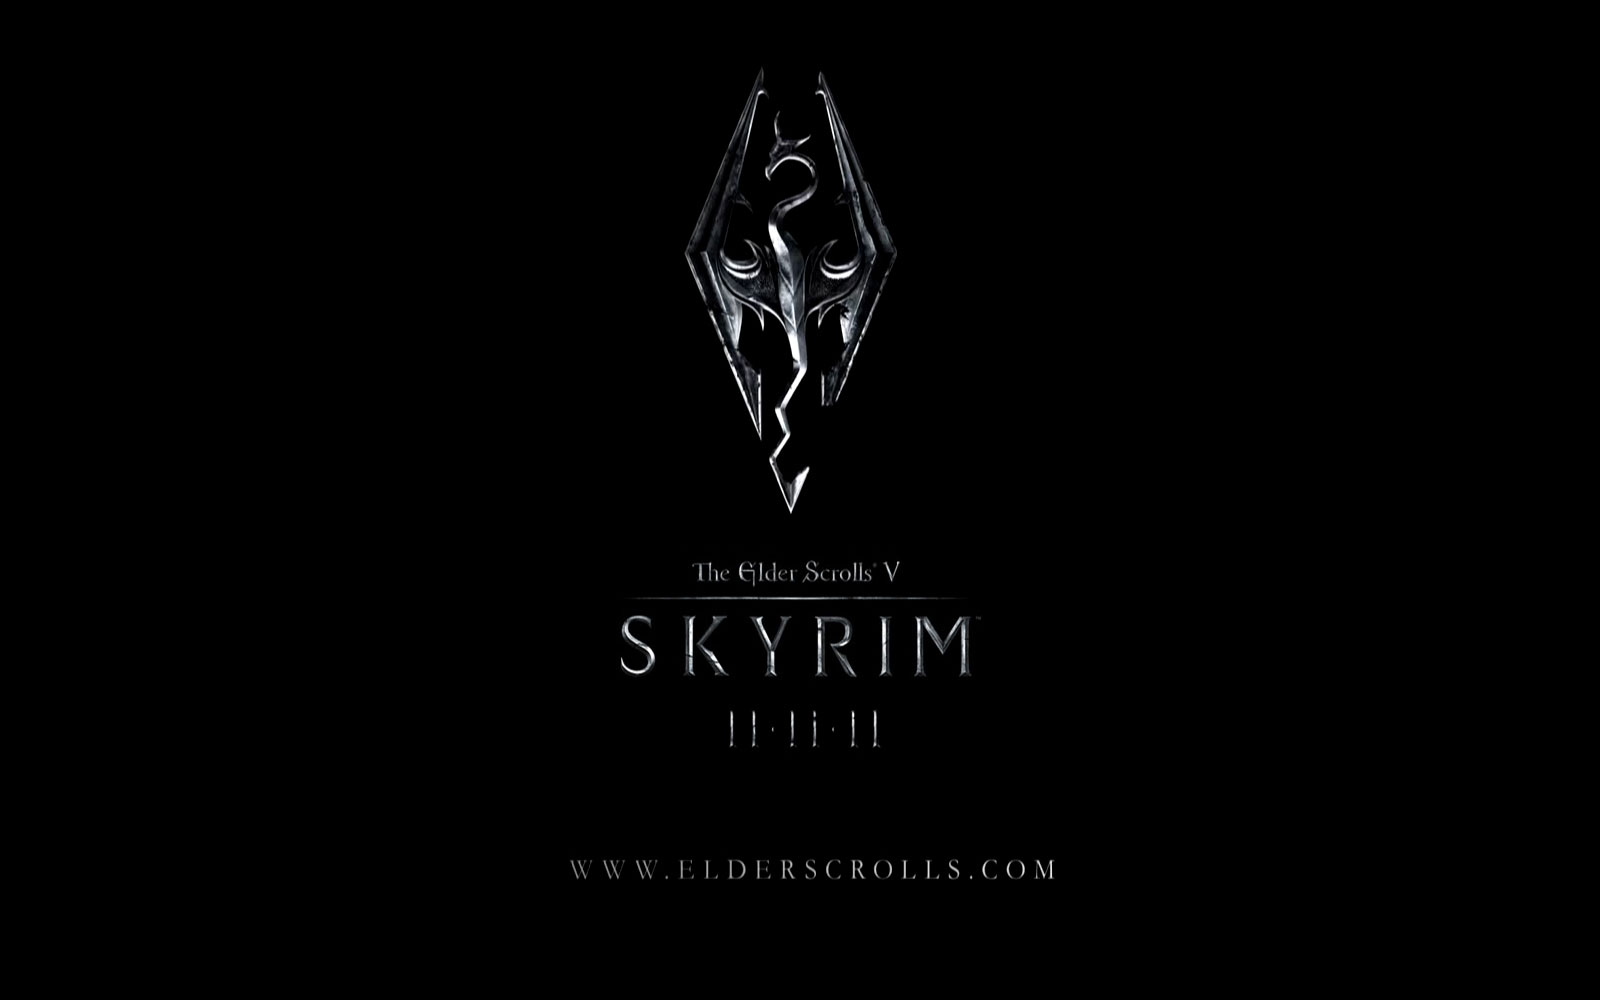 Free download wallpaper The Elder Scrolls V: Skyrim, The Elder Scrolls, Video Game on your PC desktop